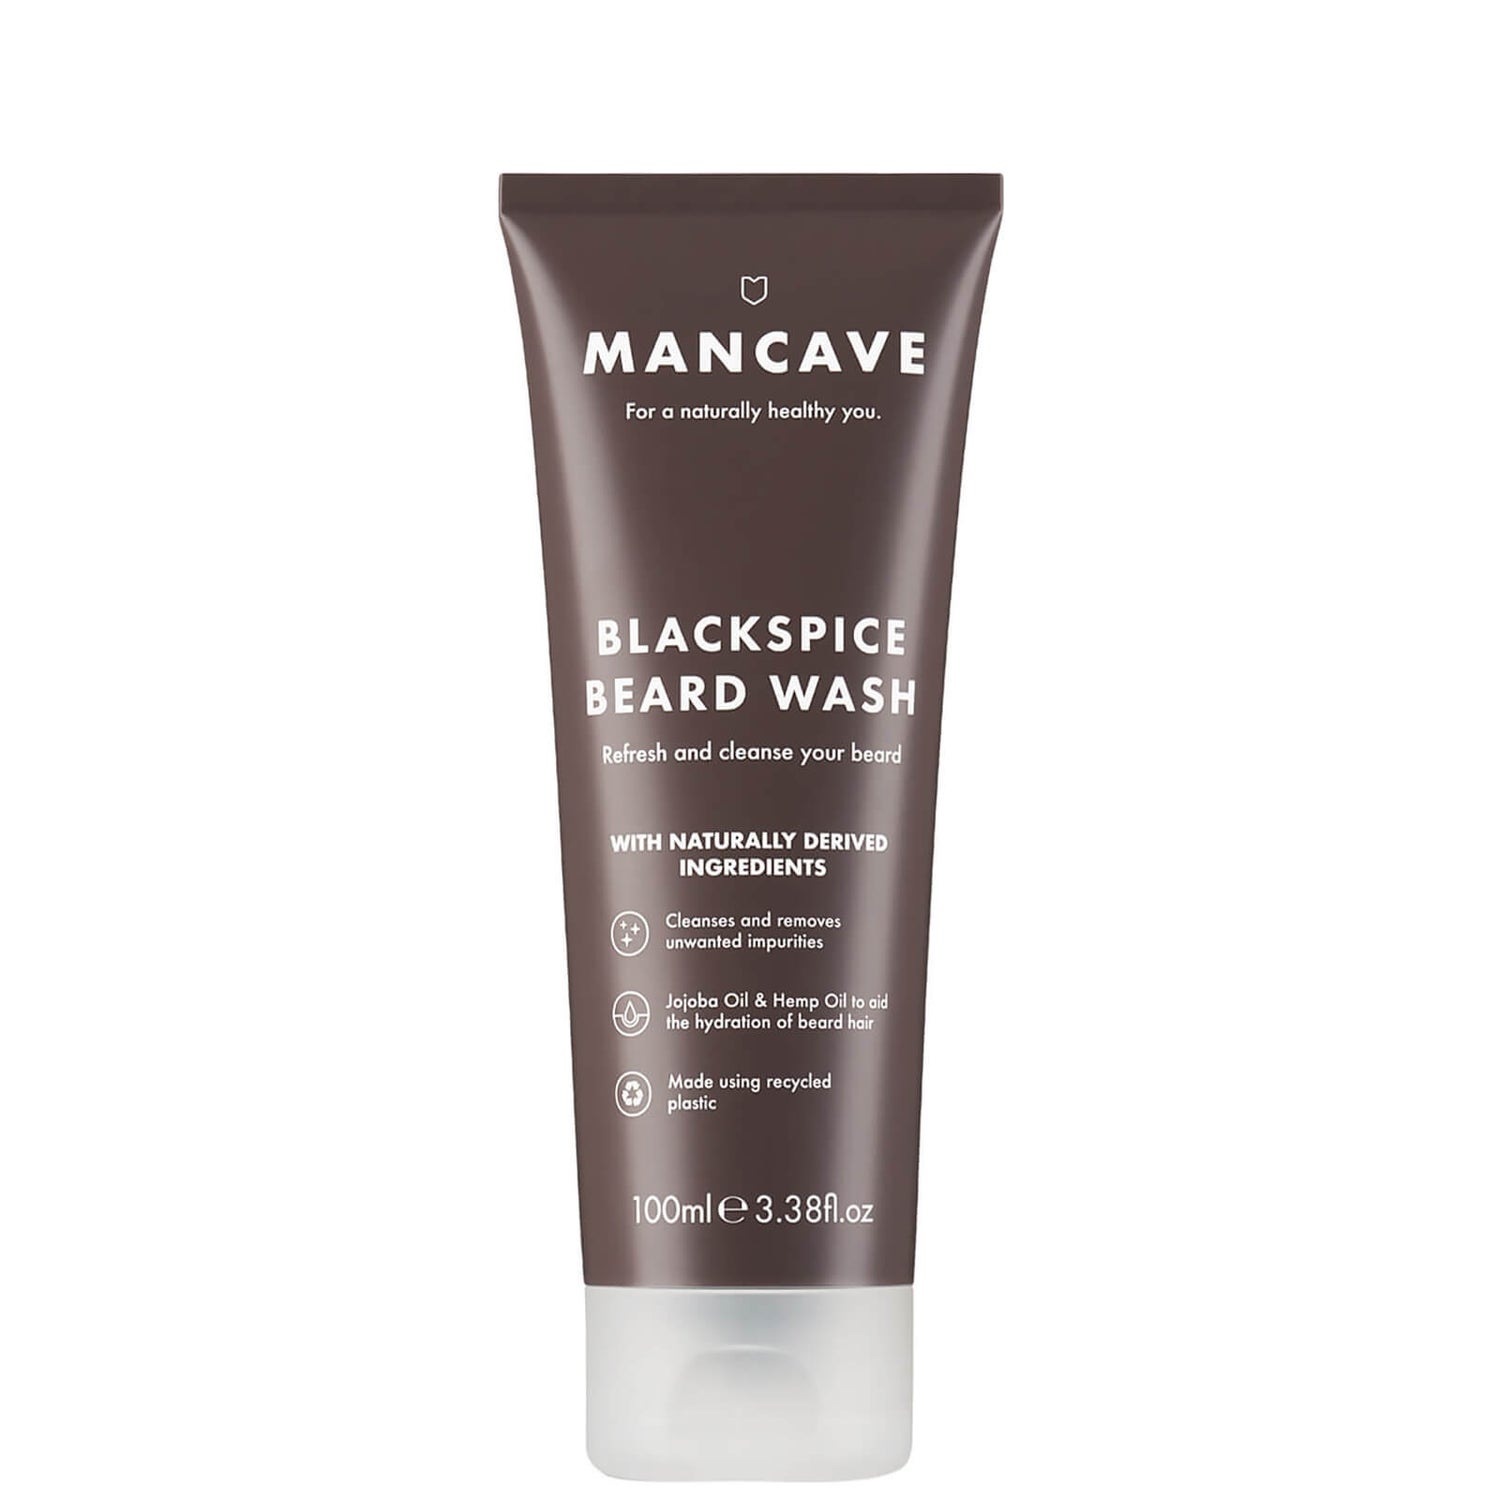 Шампунь для бороды с древесно-пряным ароматом ManCave Beard Wash — Blackspice 100 мл